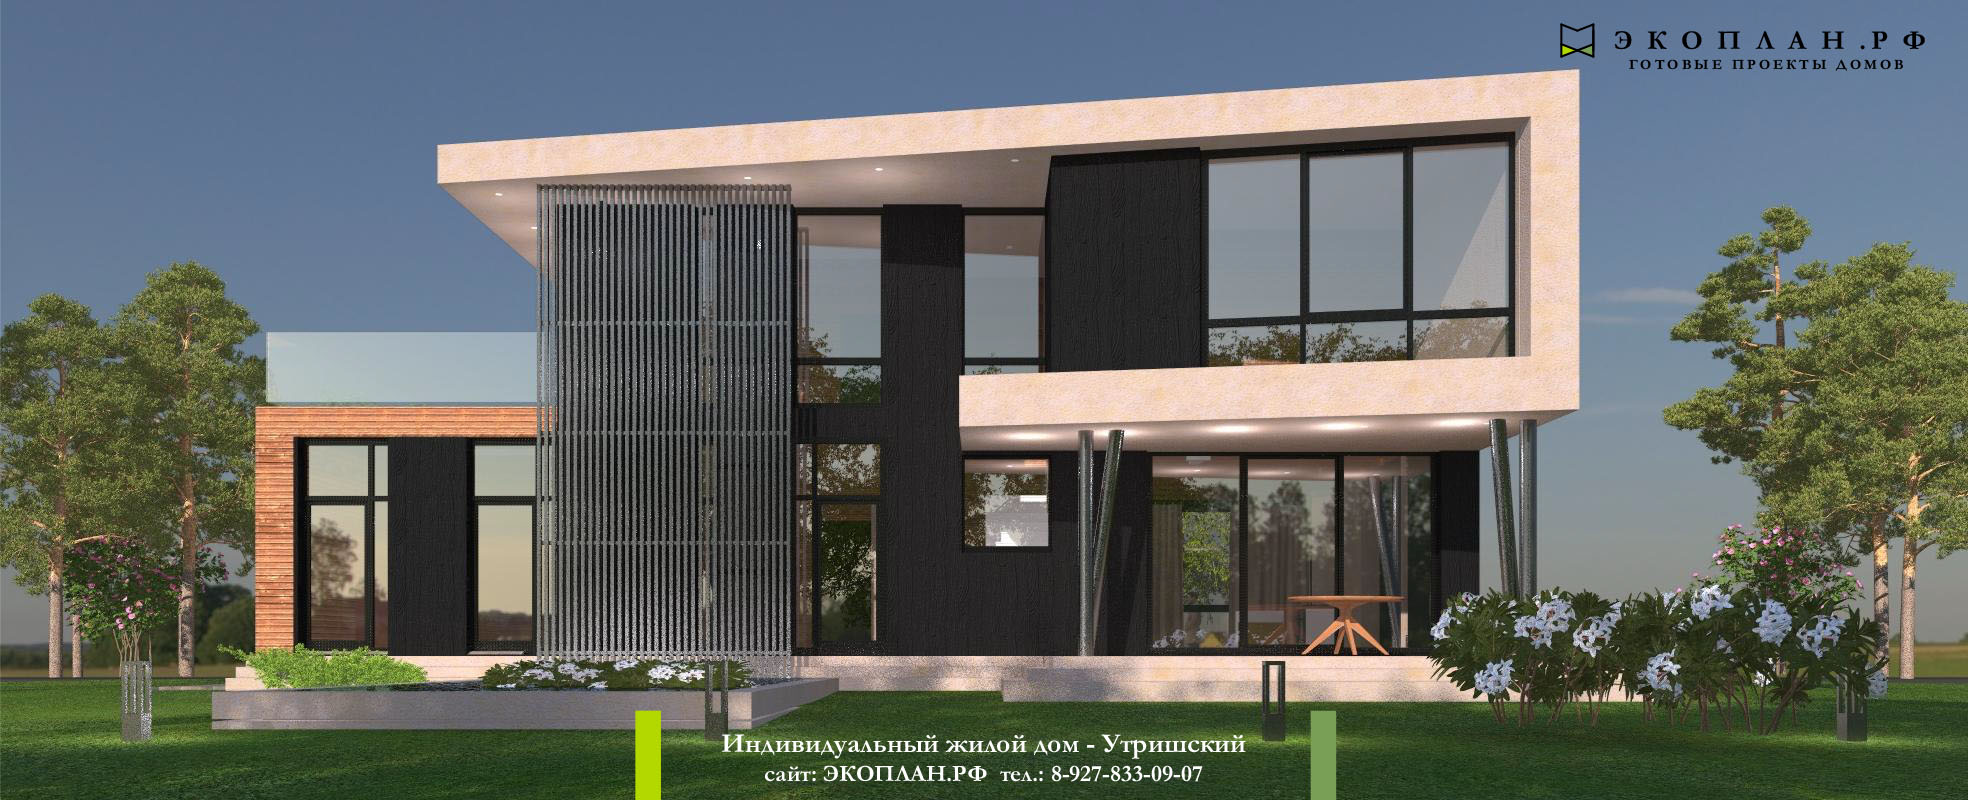 Утришский - Готовый проект дома - Экоплан.рф фасад